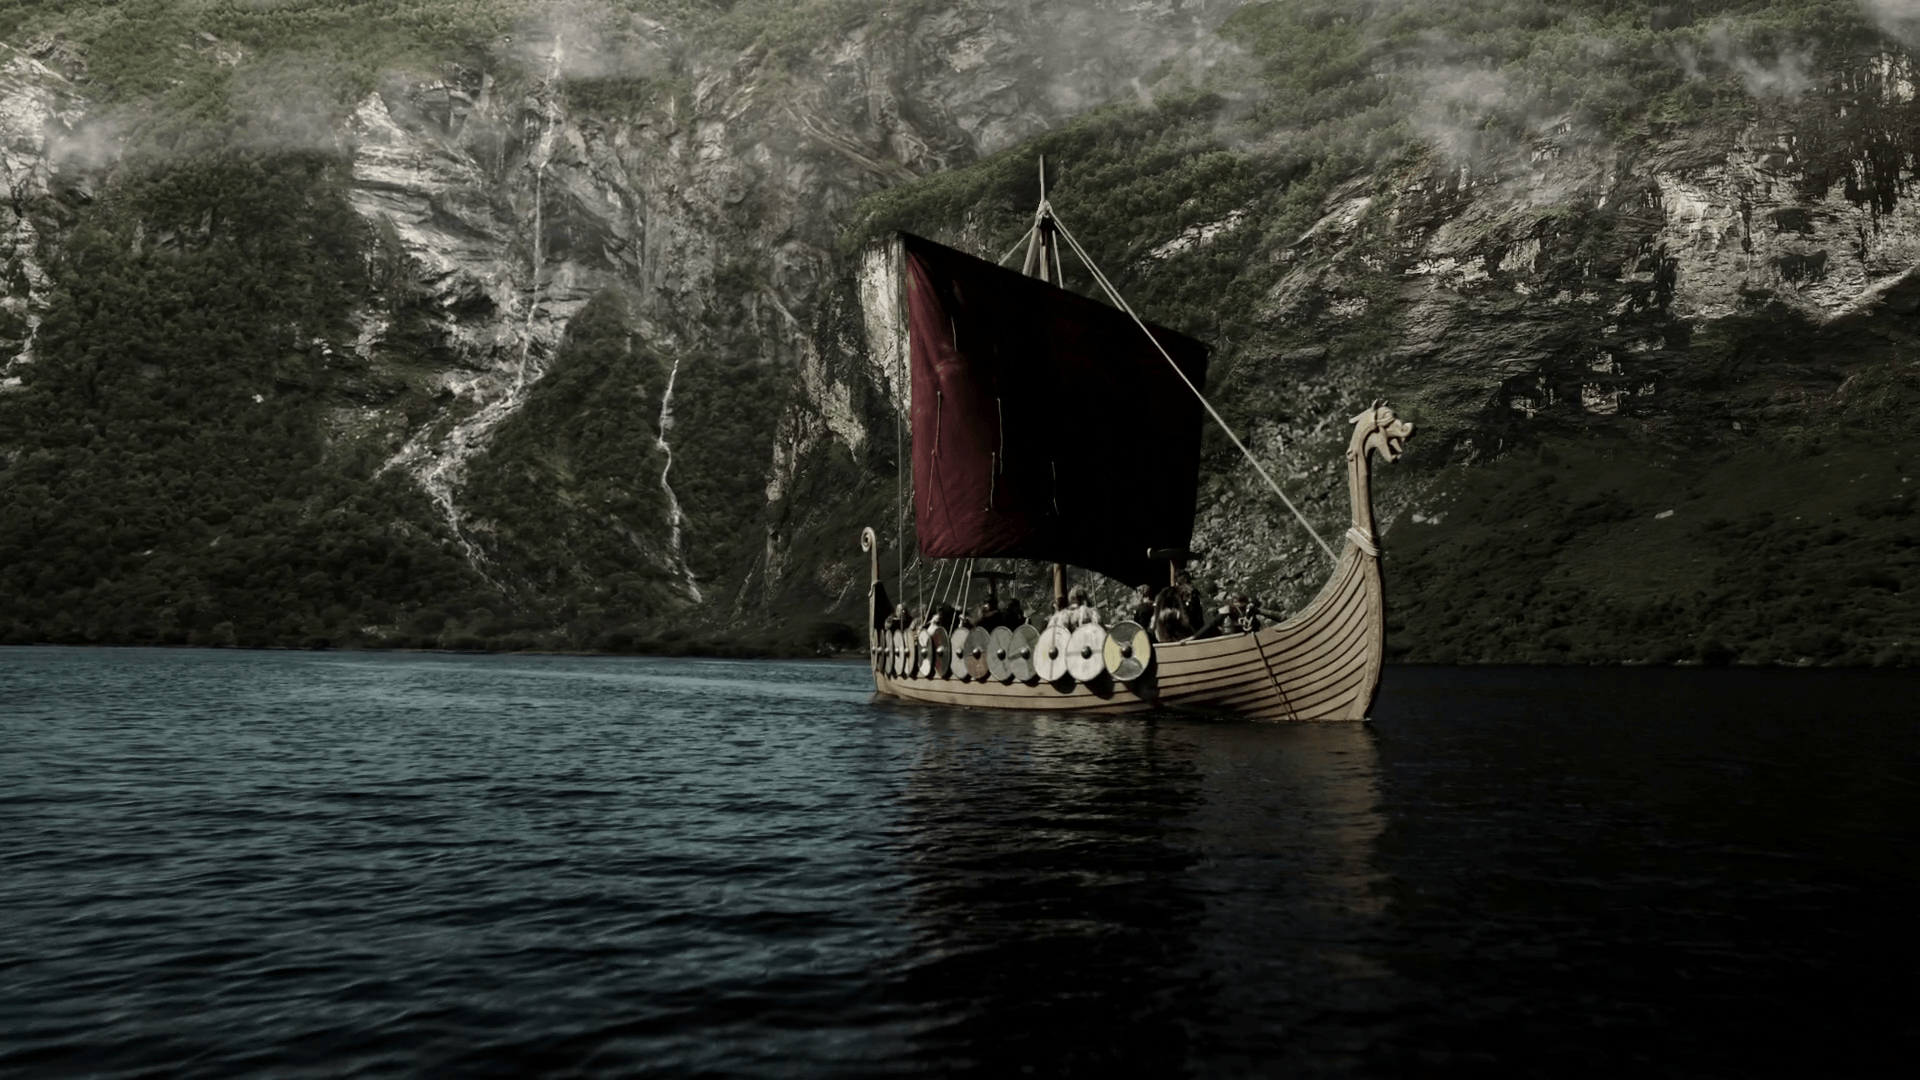 Viking Background Download Free